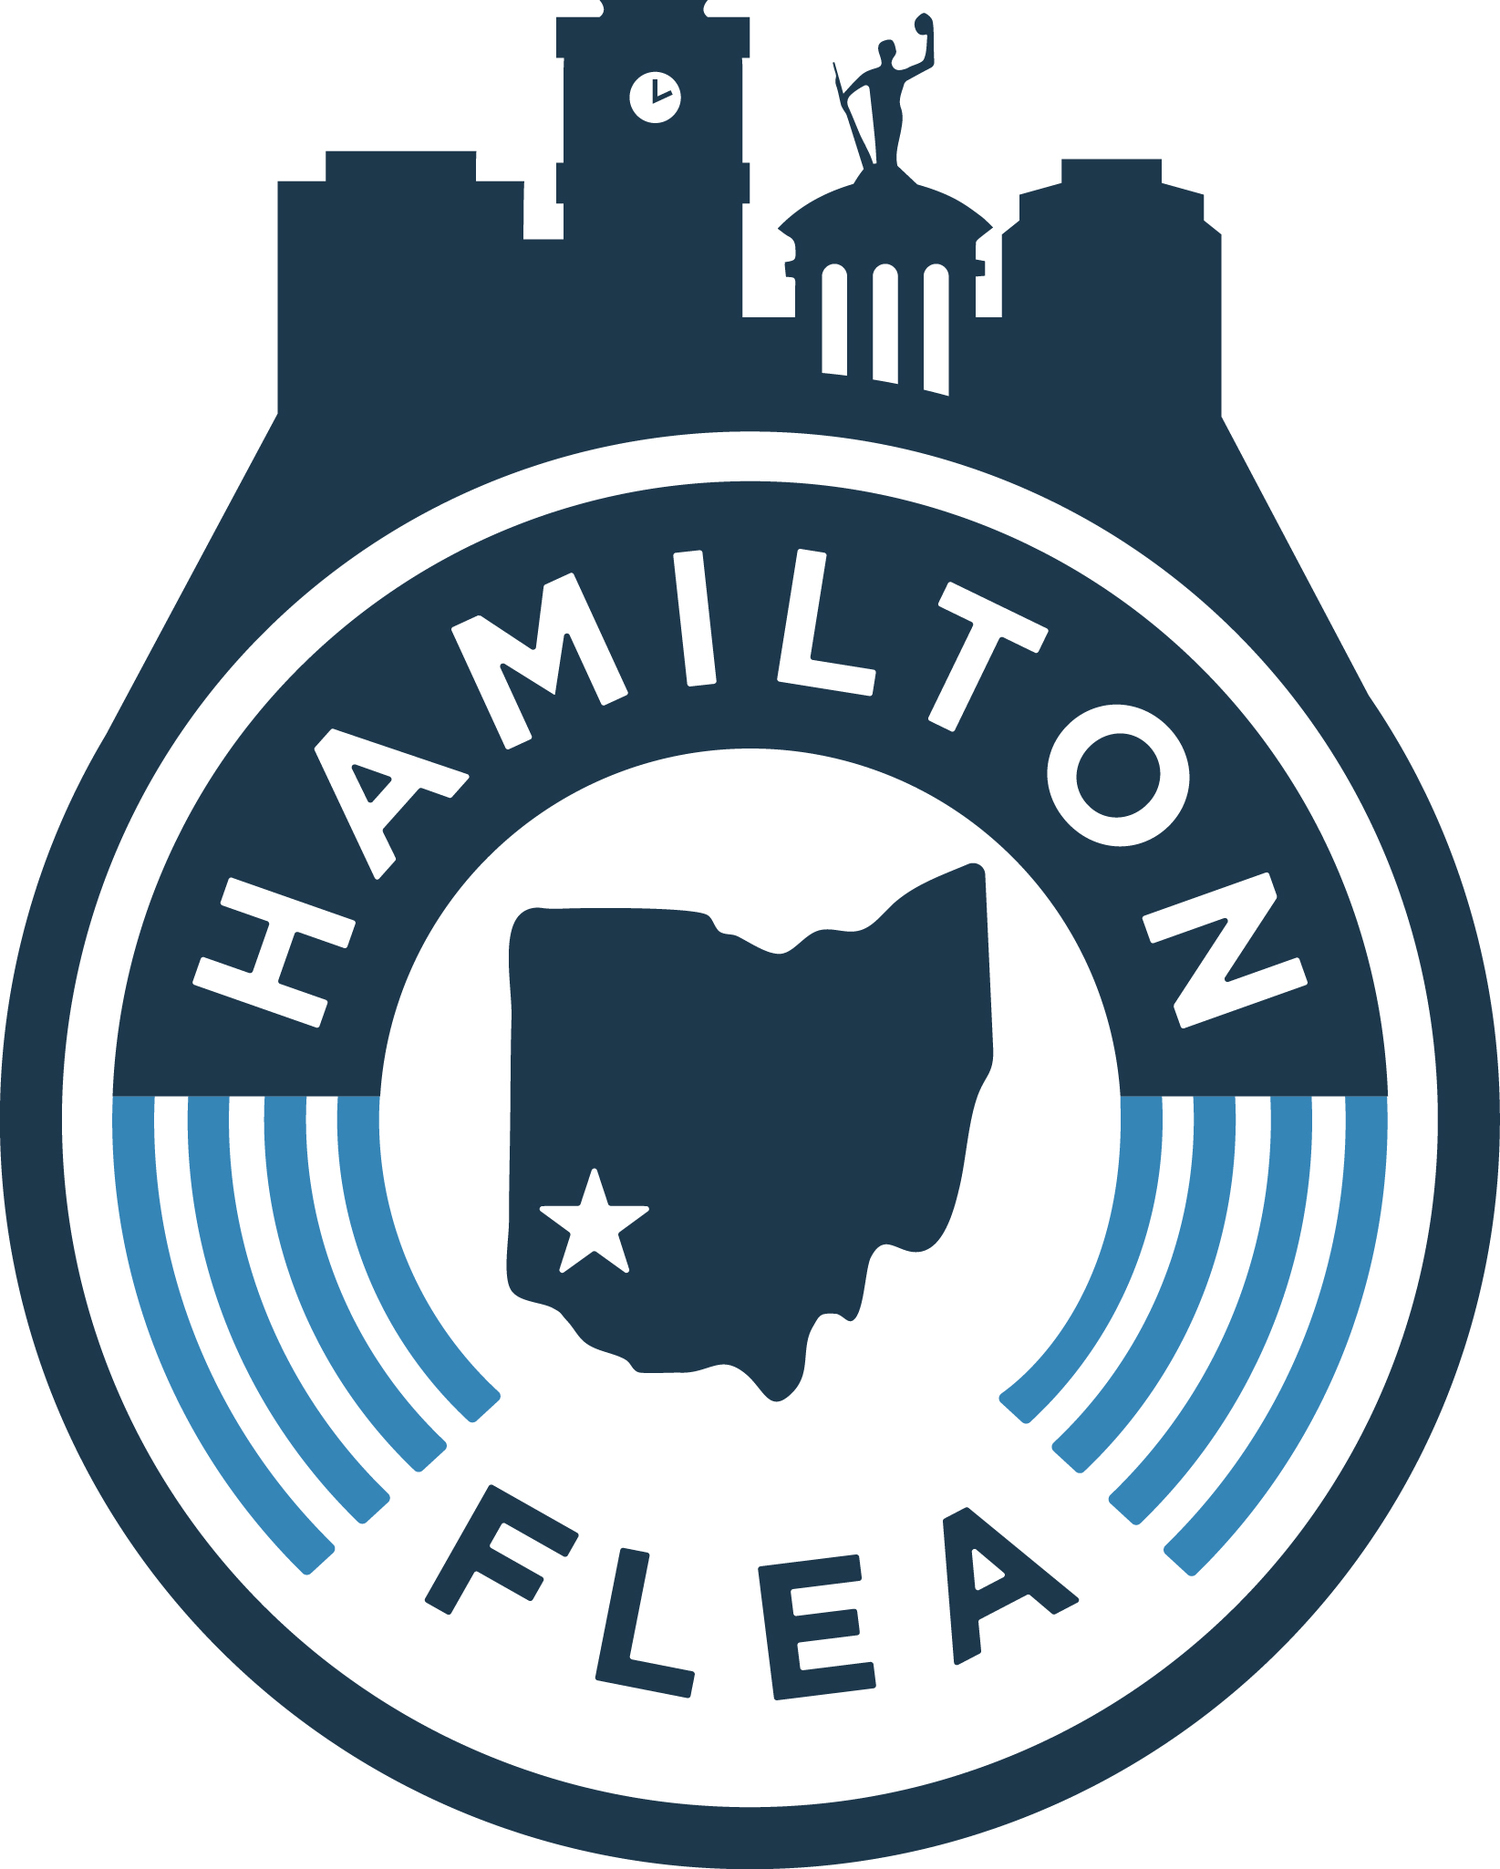 HAMILTON FLEA